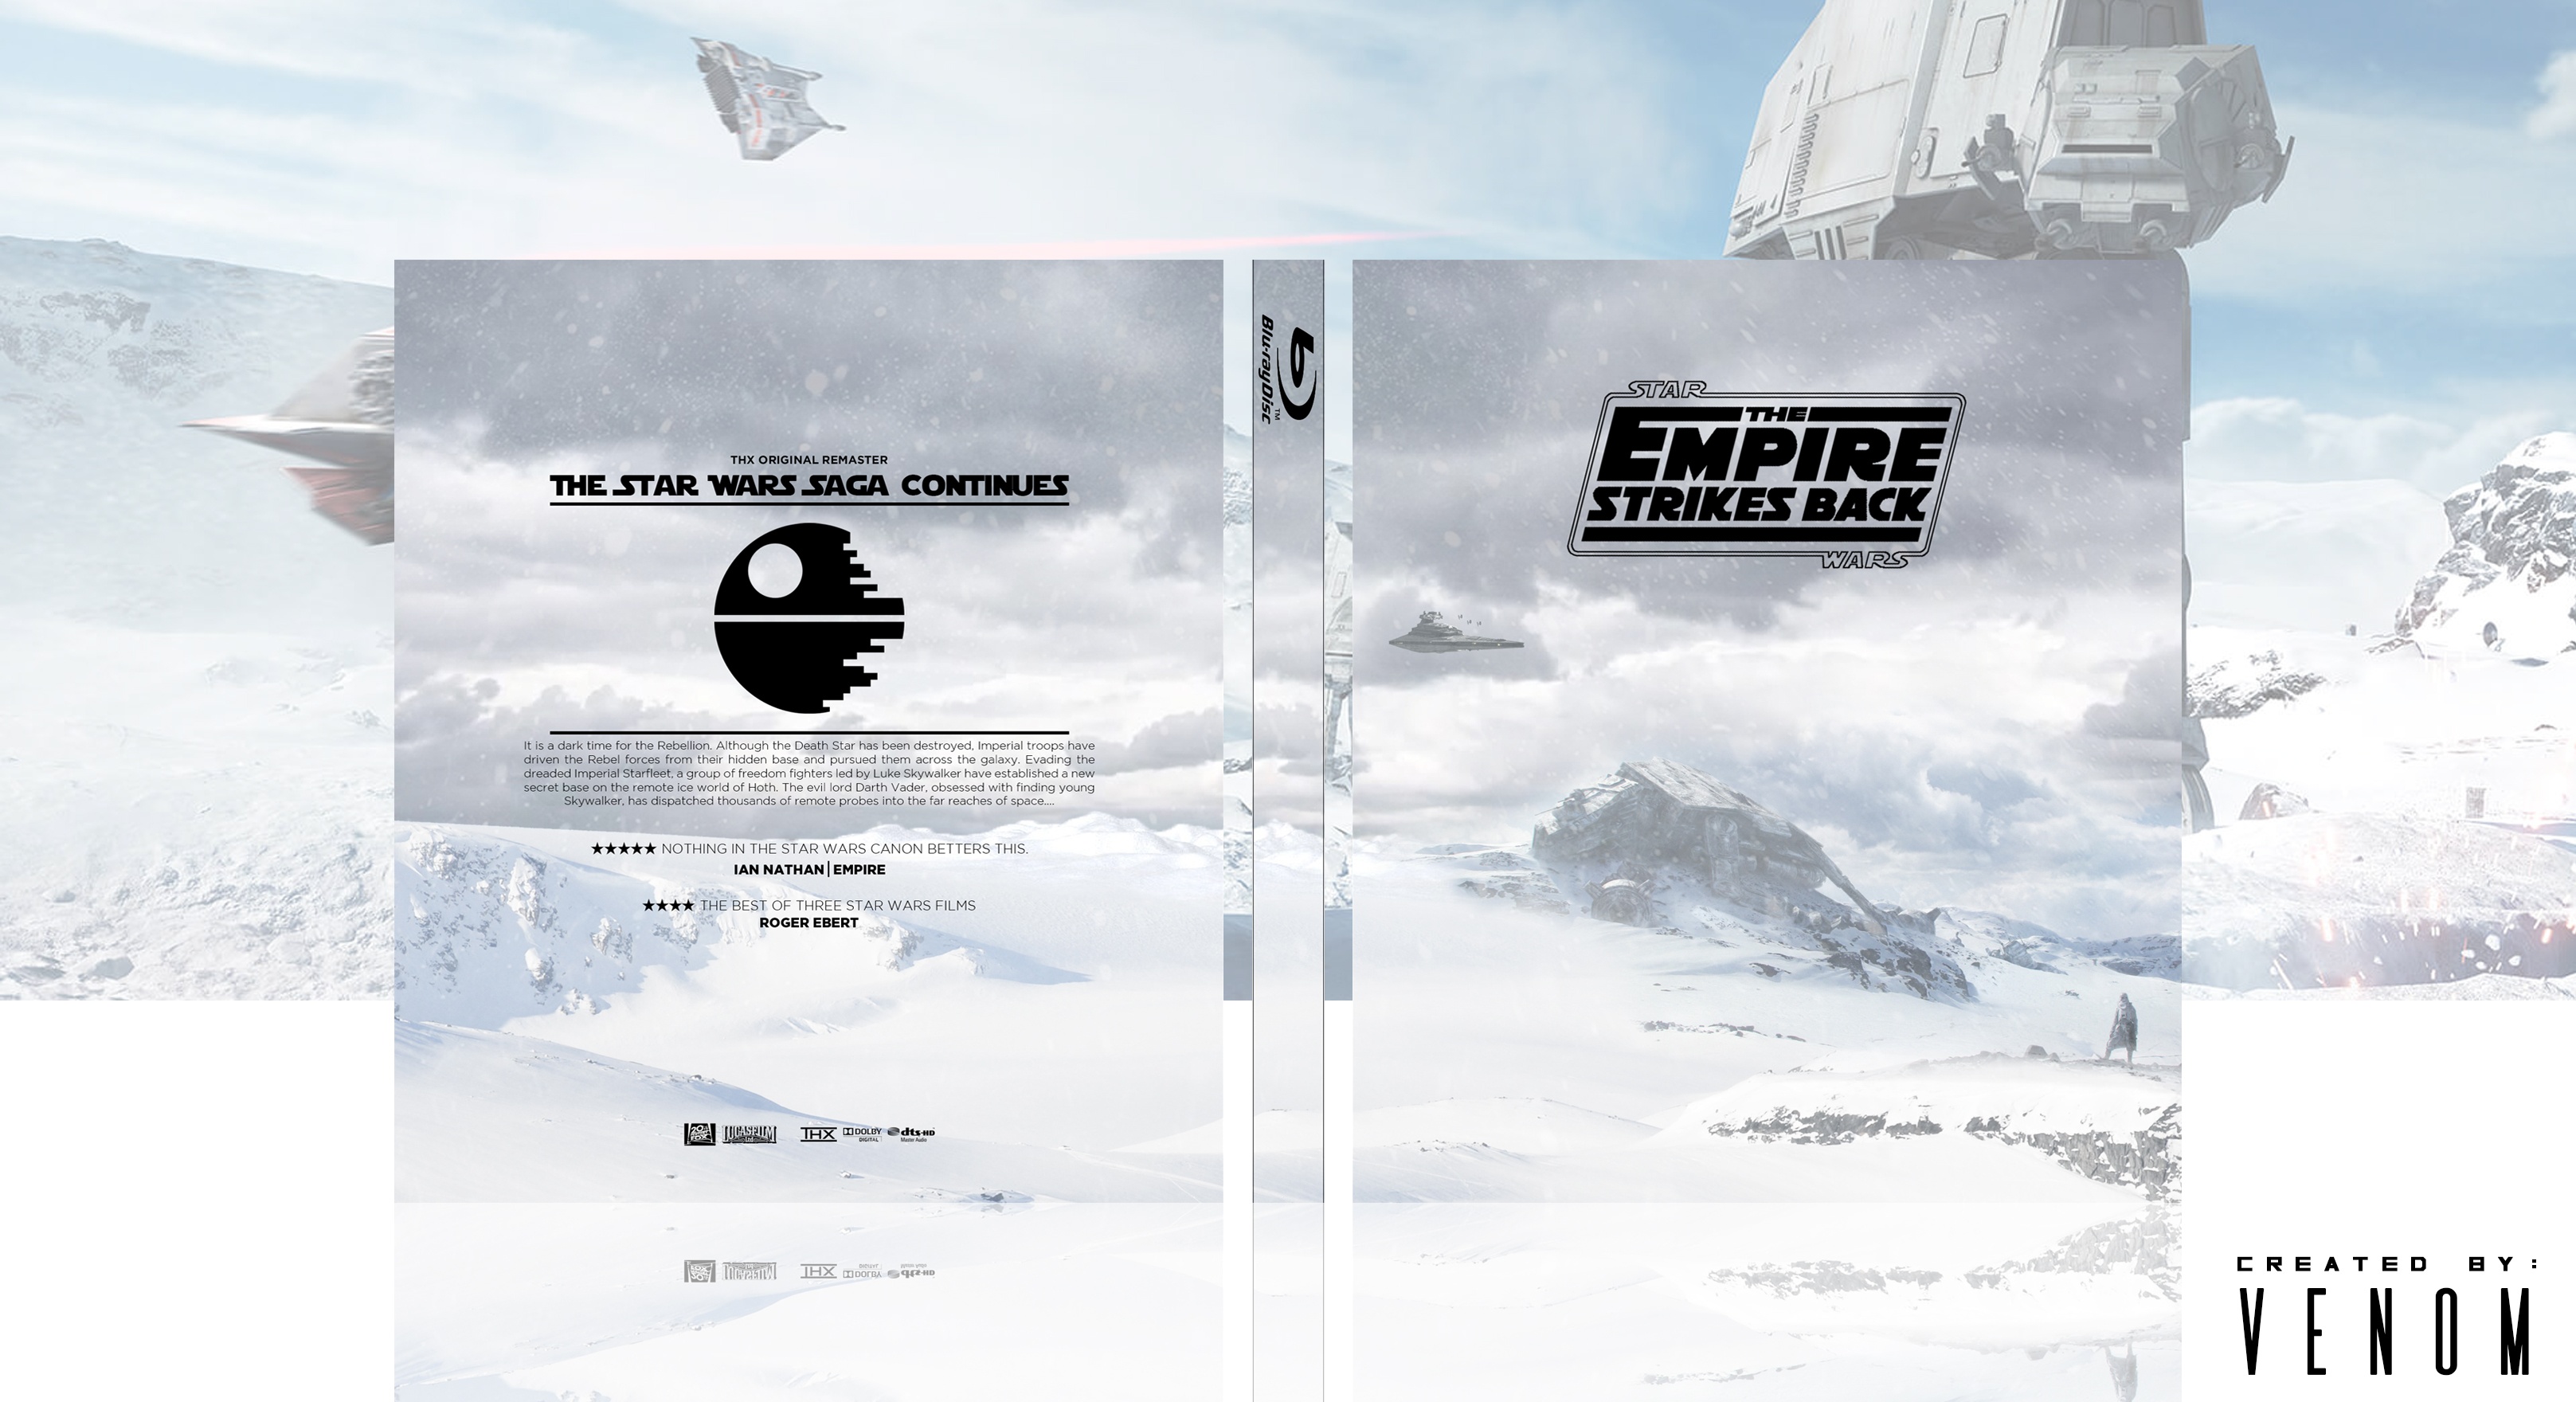 The Empire Strikes Back box cover